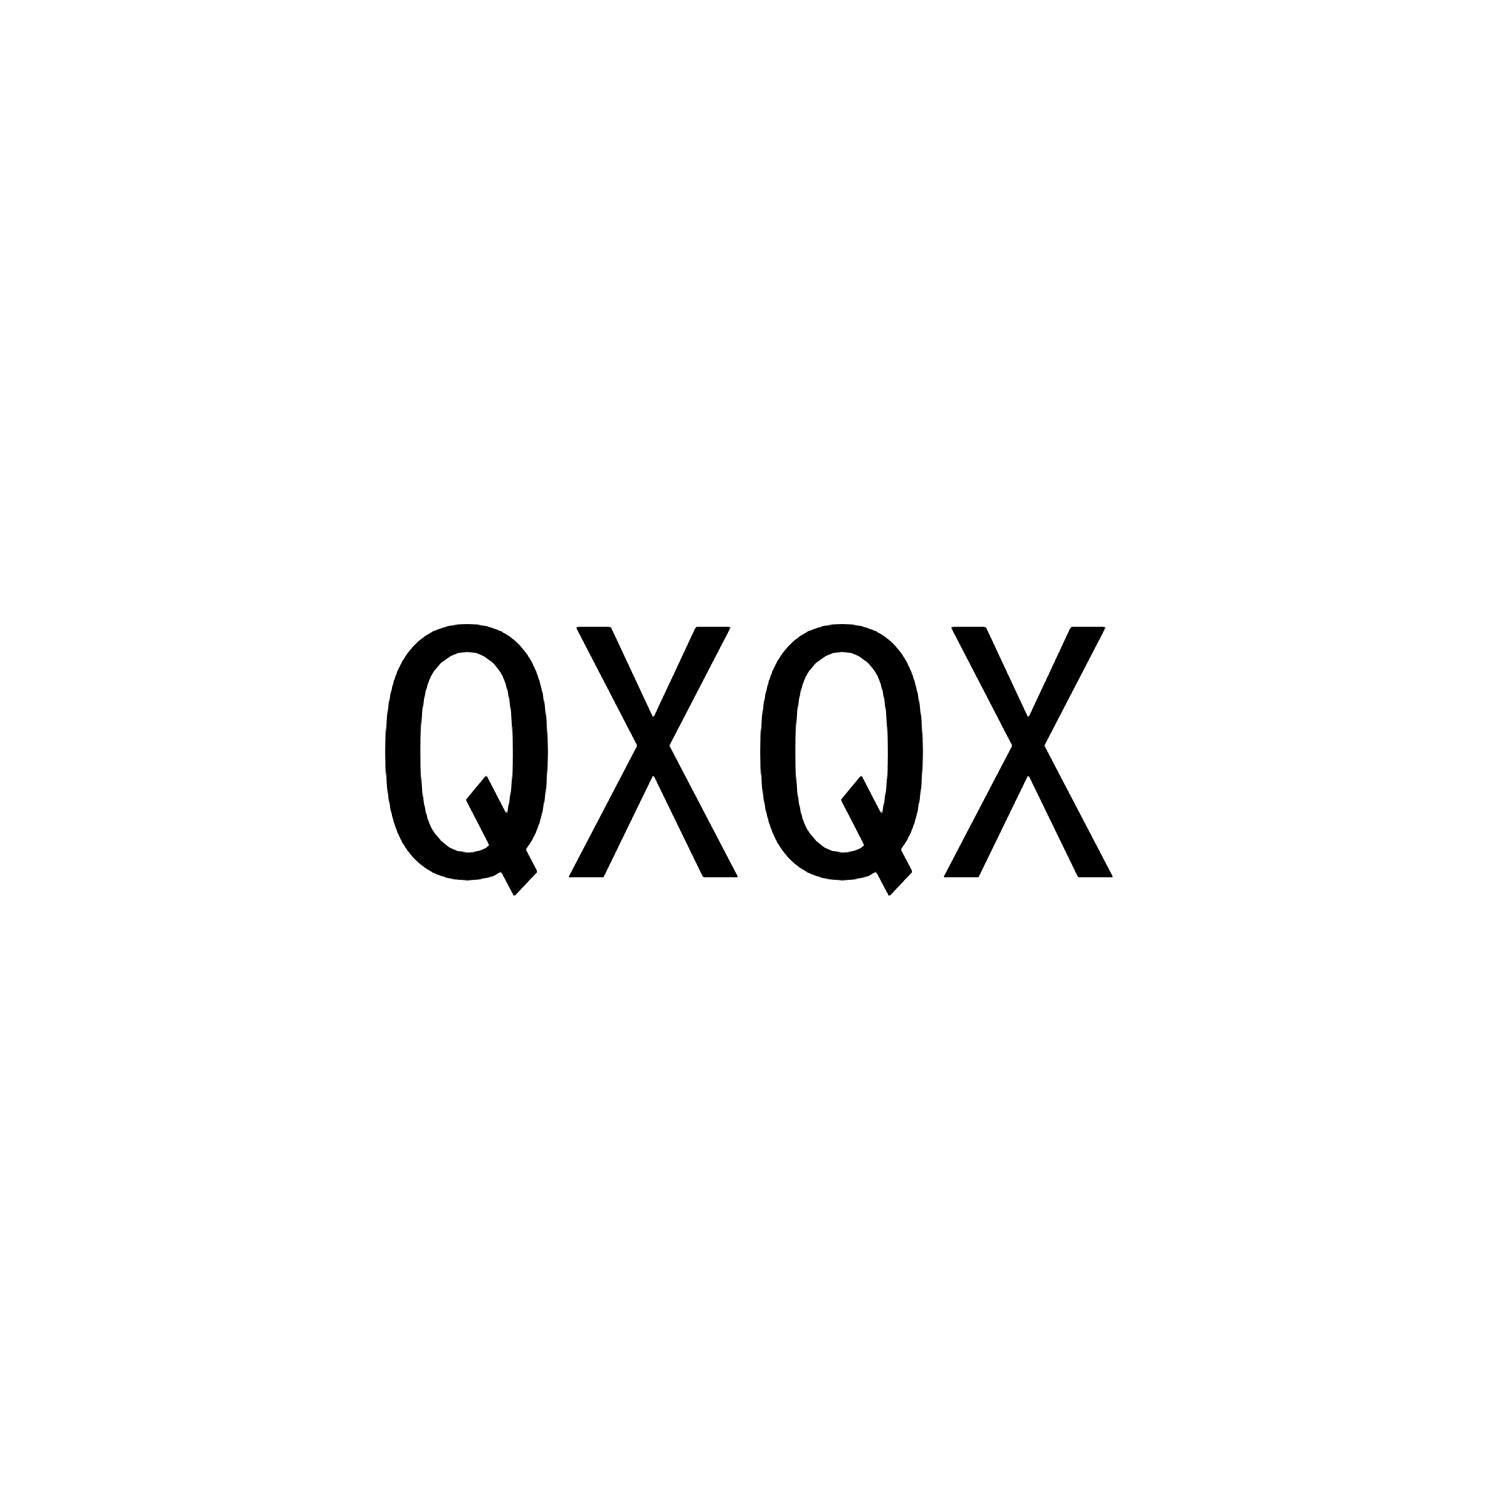 QXQX